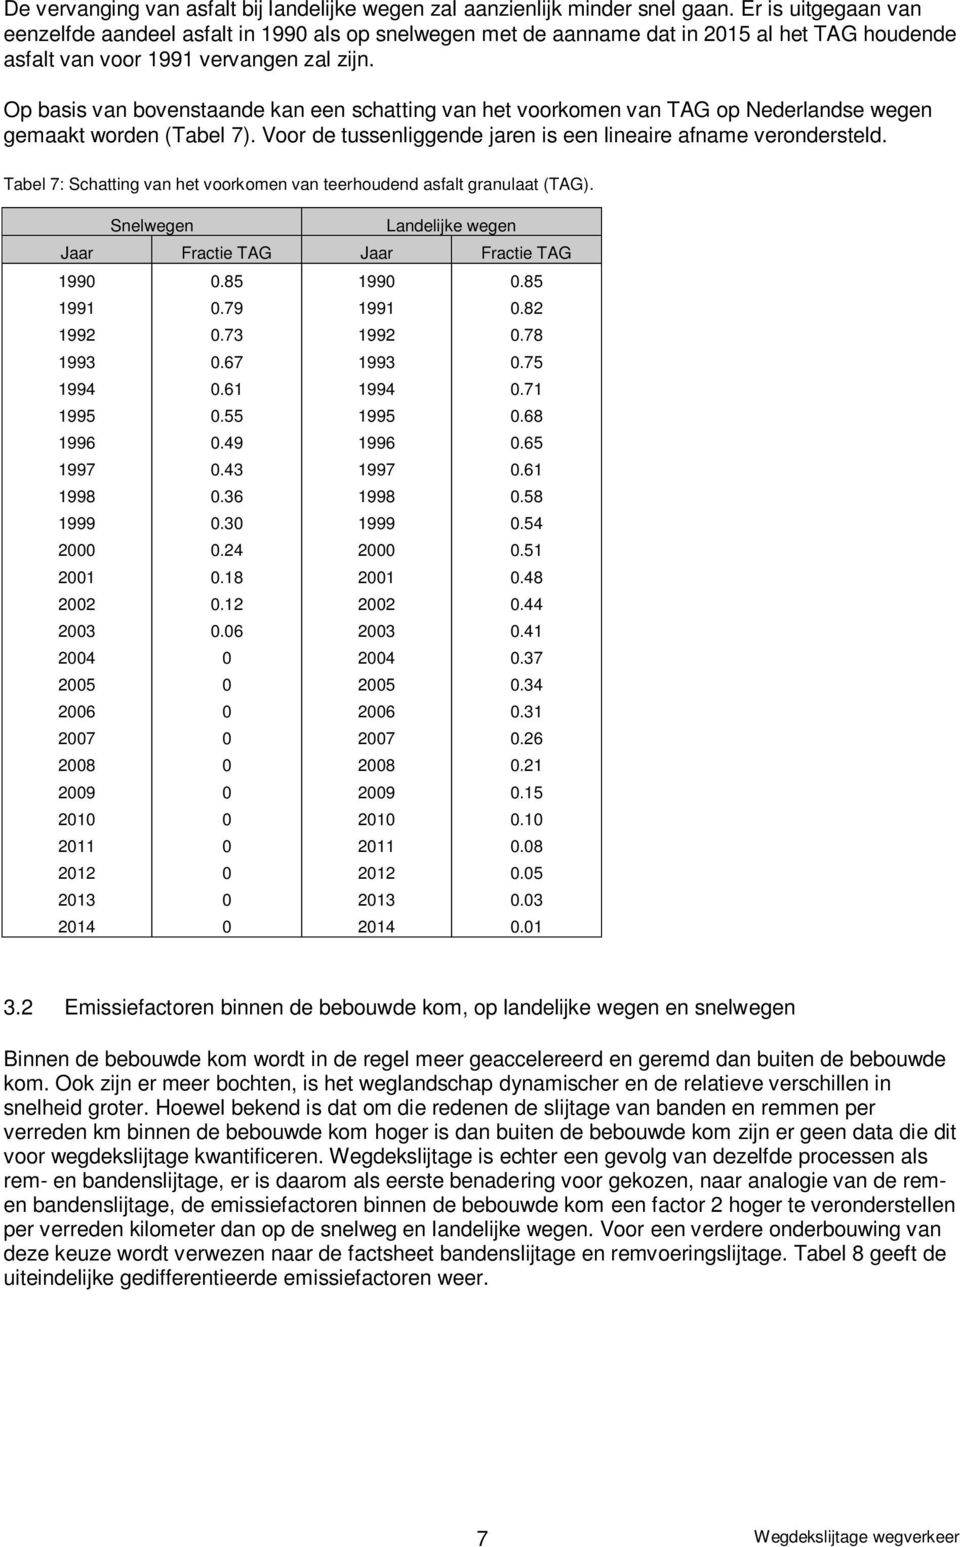 Op basis van bovenstaande kan een schatting van het voorkomen van TAG op Nederlandse wegen gemaakt worden (Tabel 7). Voor de tussenliggende jaren is een lineaire afname verondersteld.